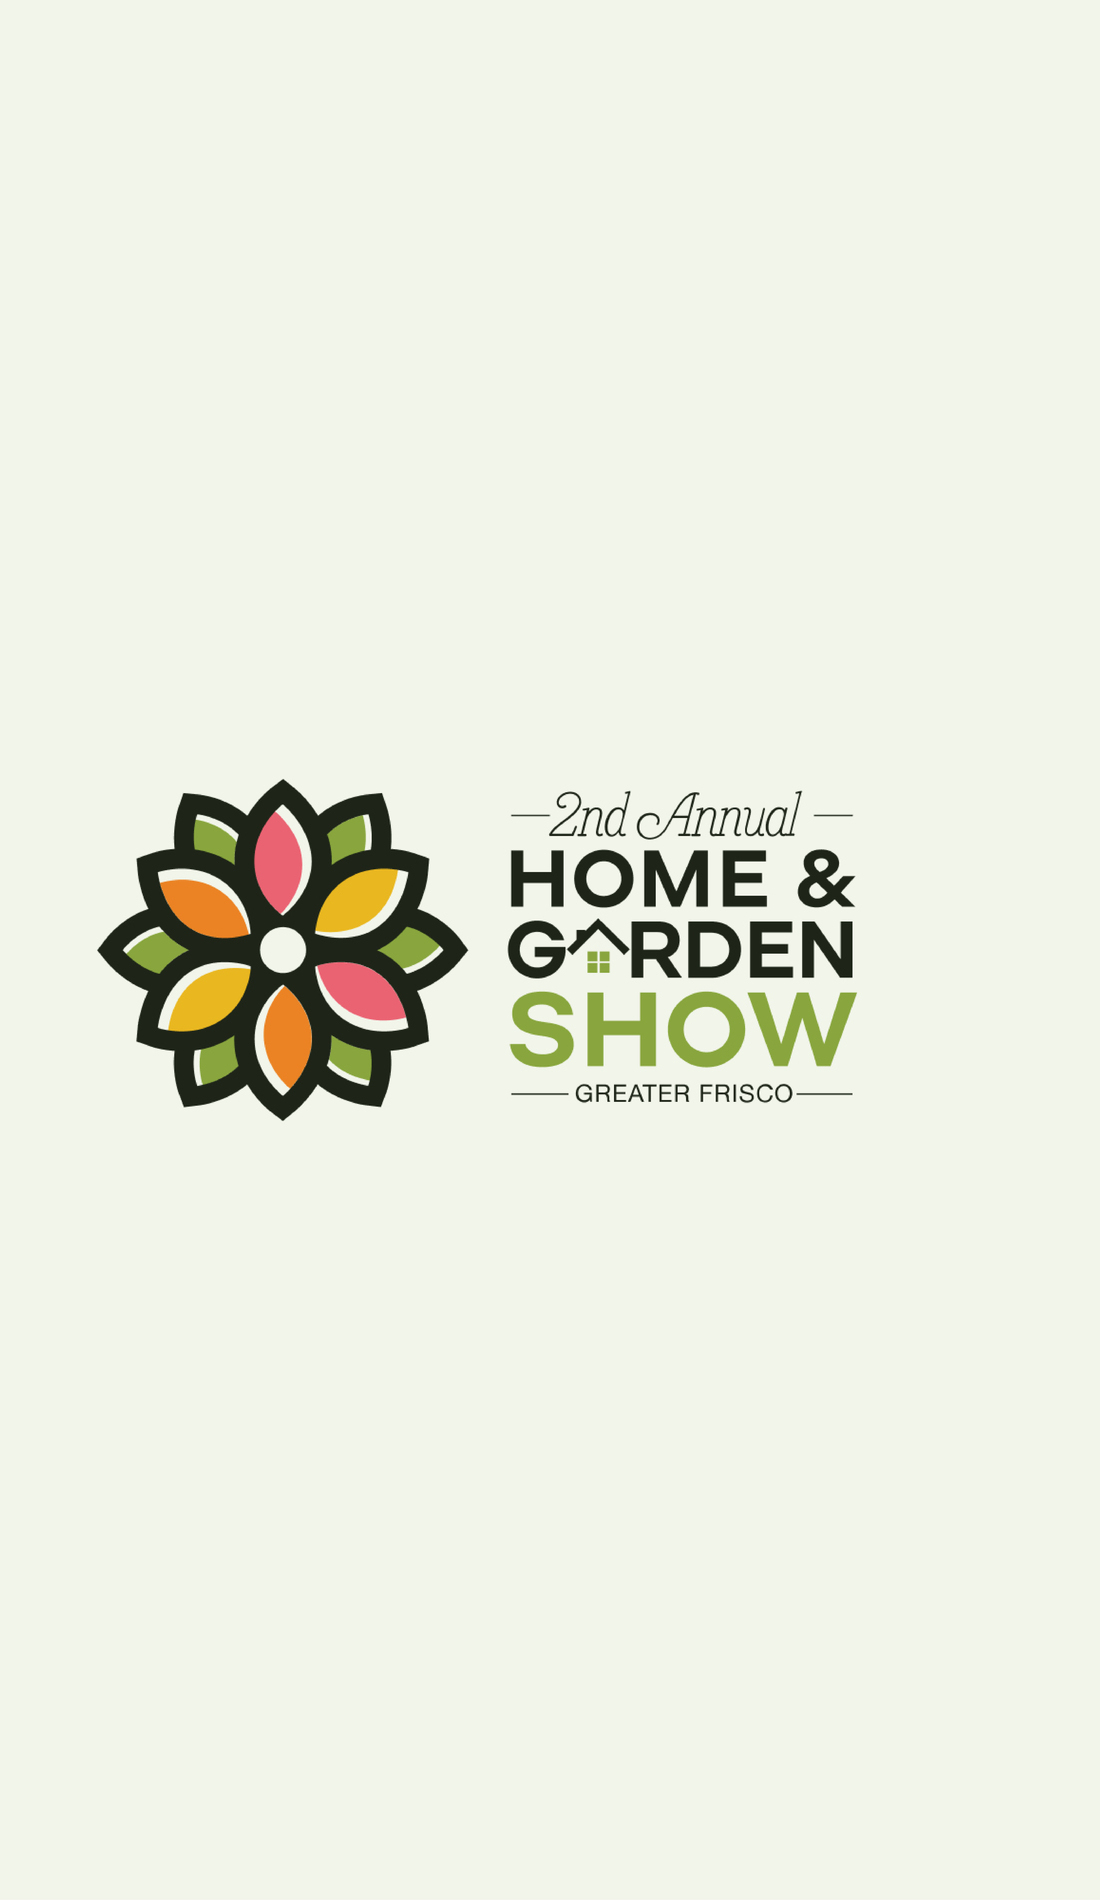 A Home & Garden live event